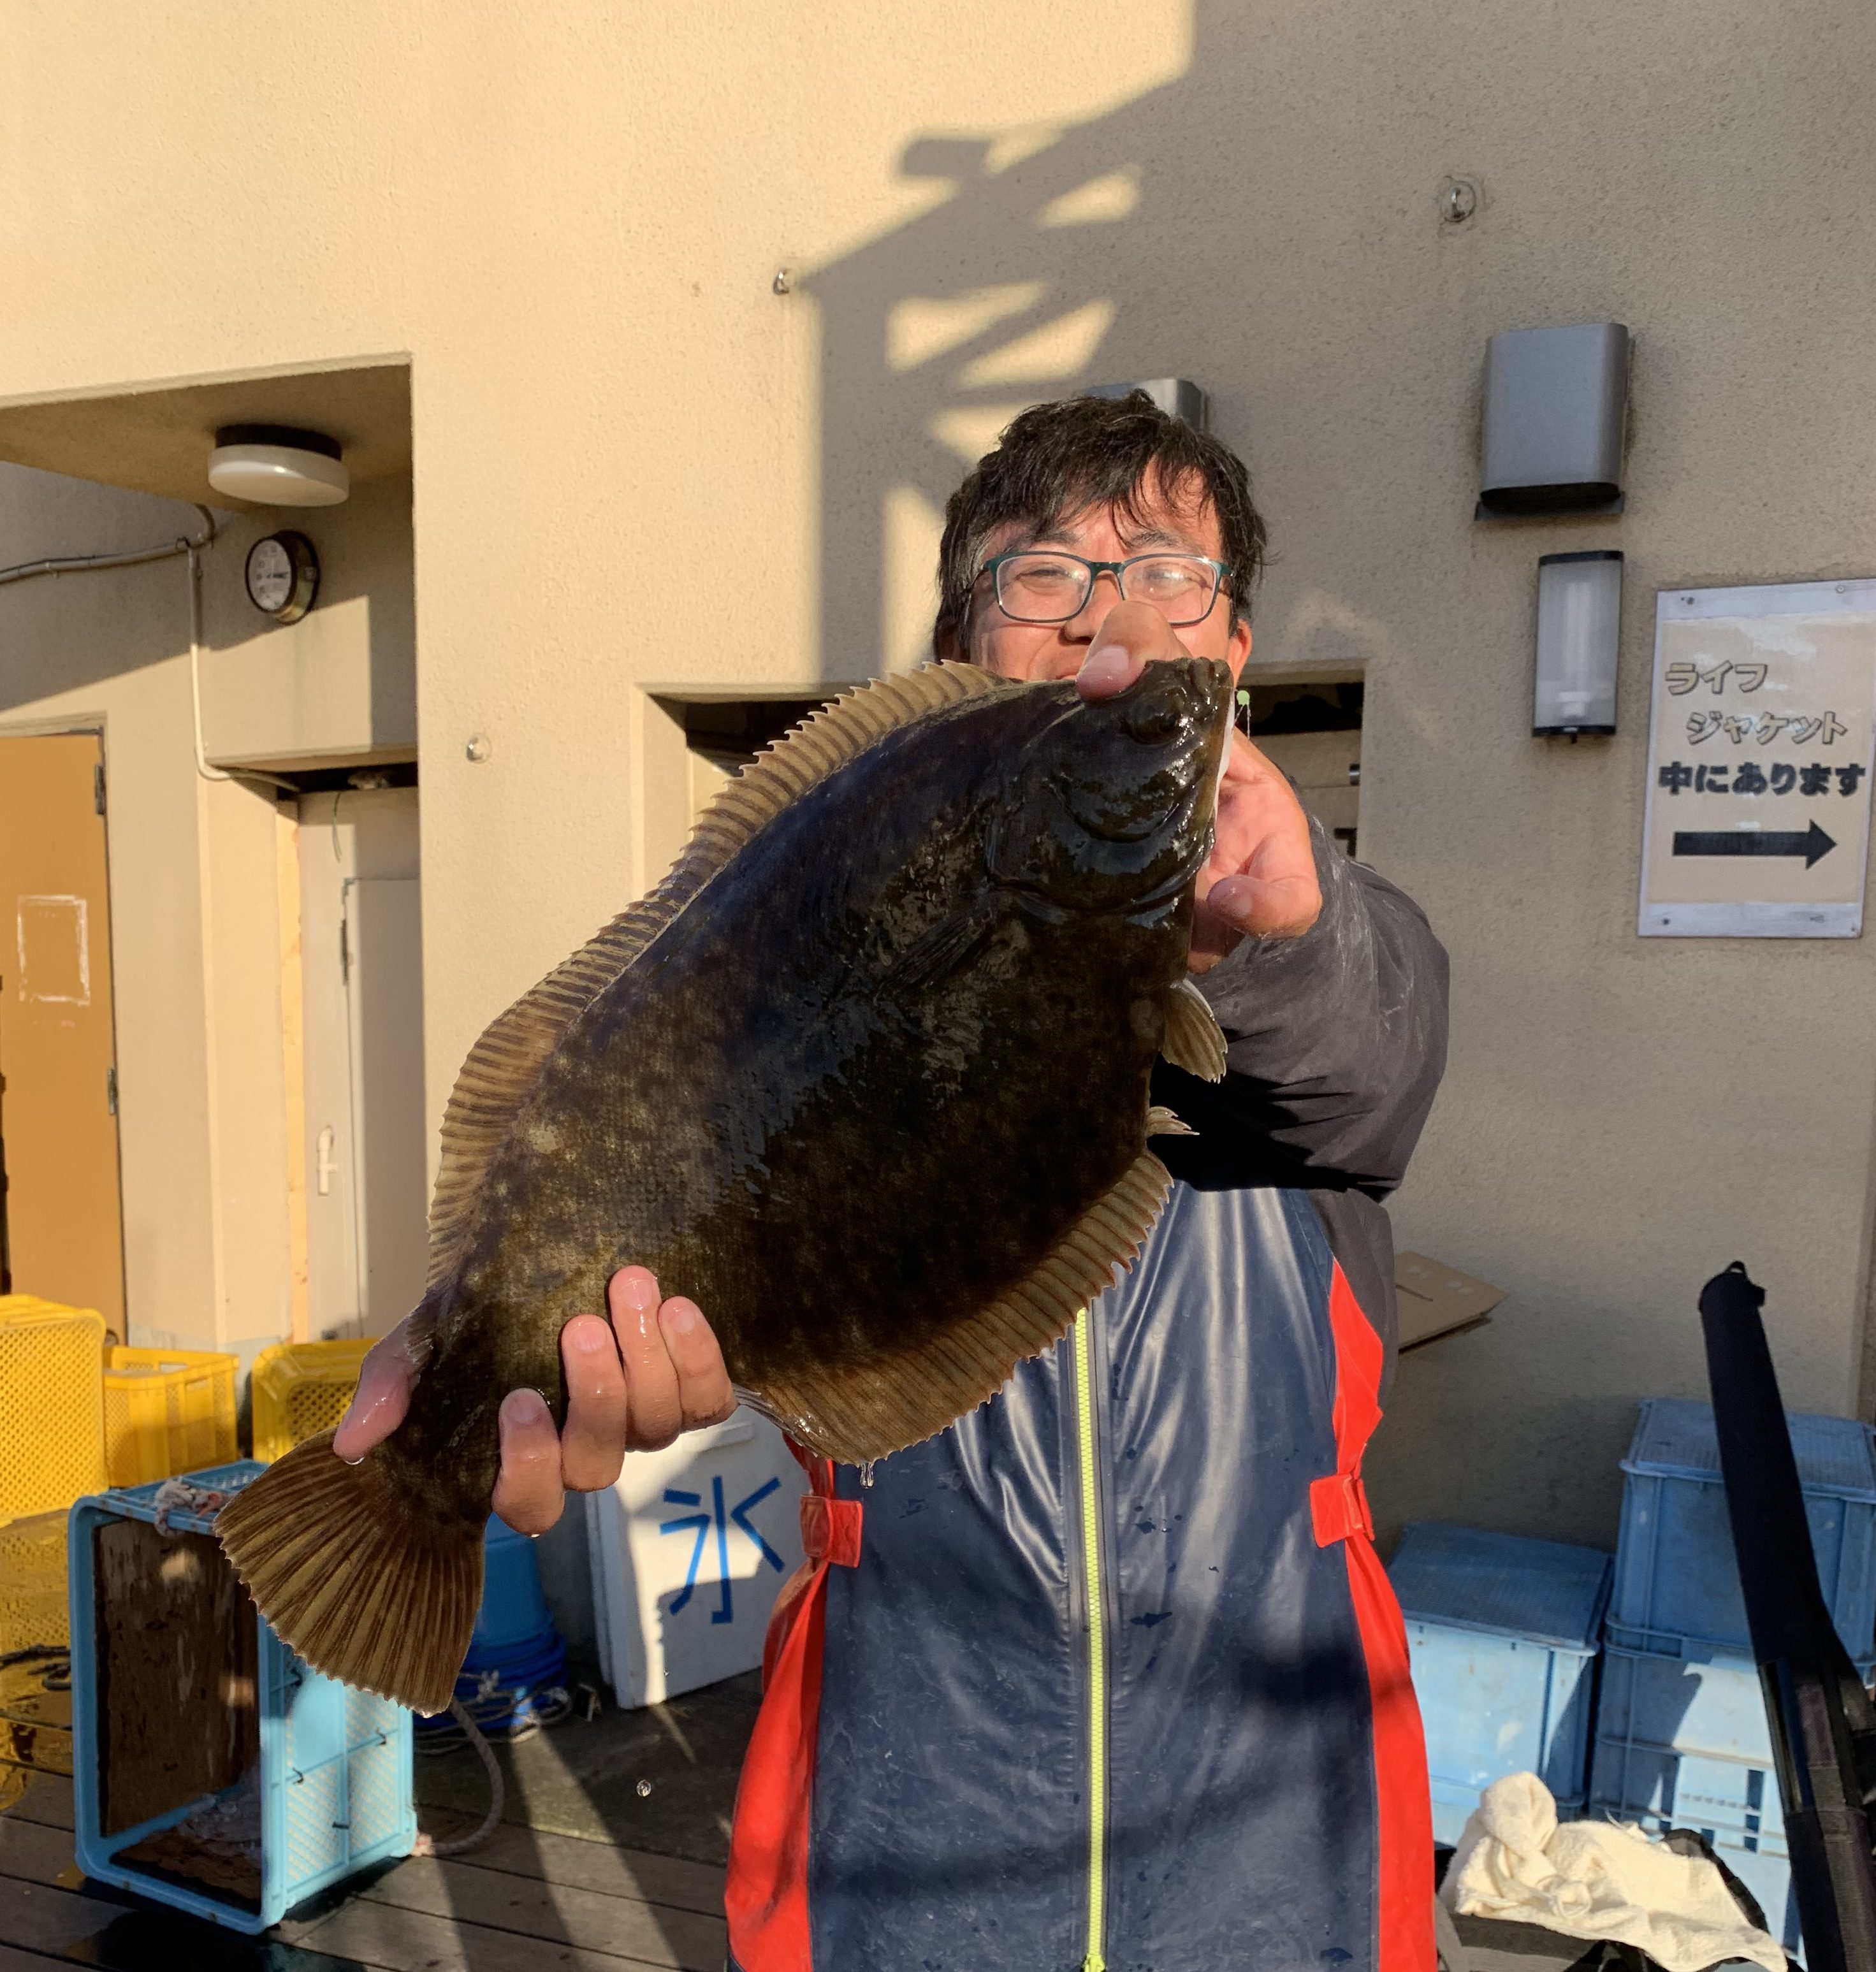 ２０１９年１１月１７日 横浜 金沢八景の釣り船 荒川屋 釣って食べられる 駅から徒歩5分のマリンレジャーへようこそ